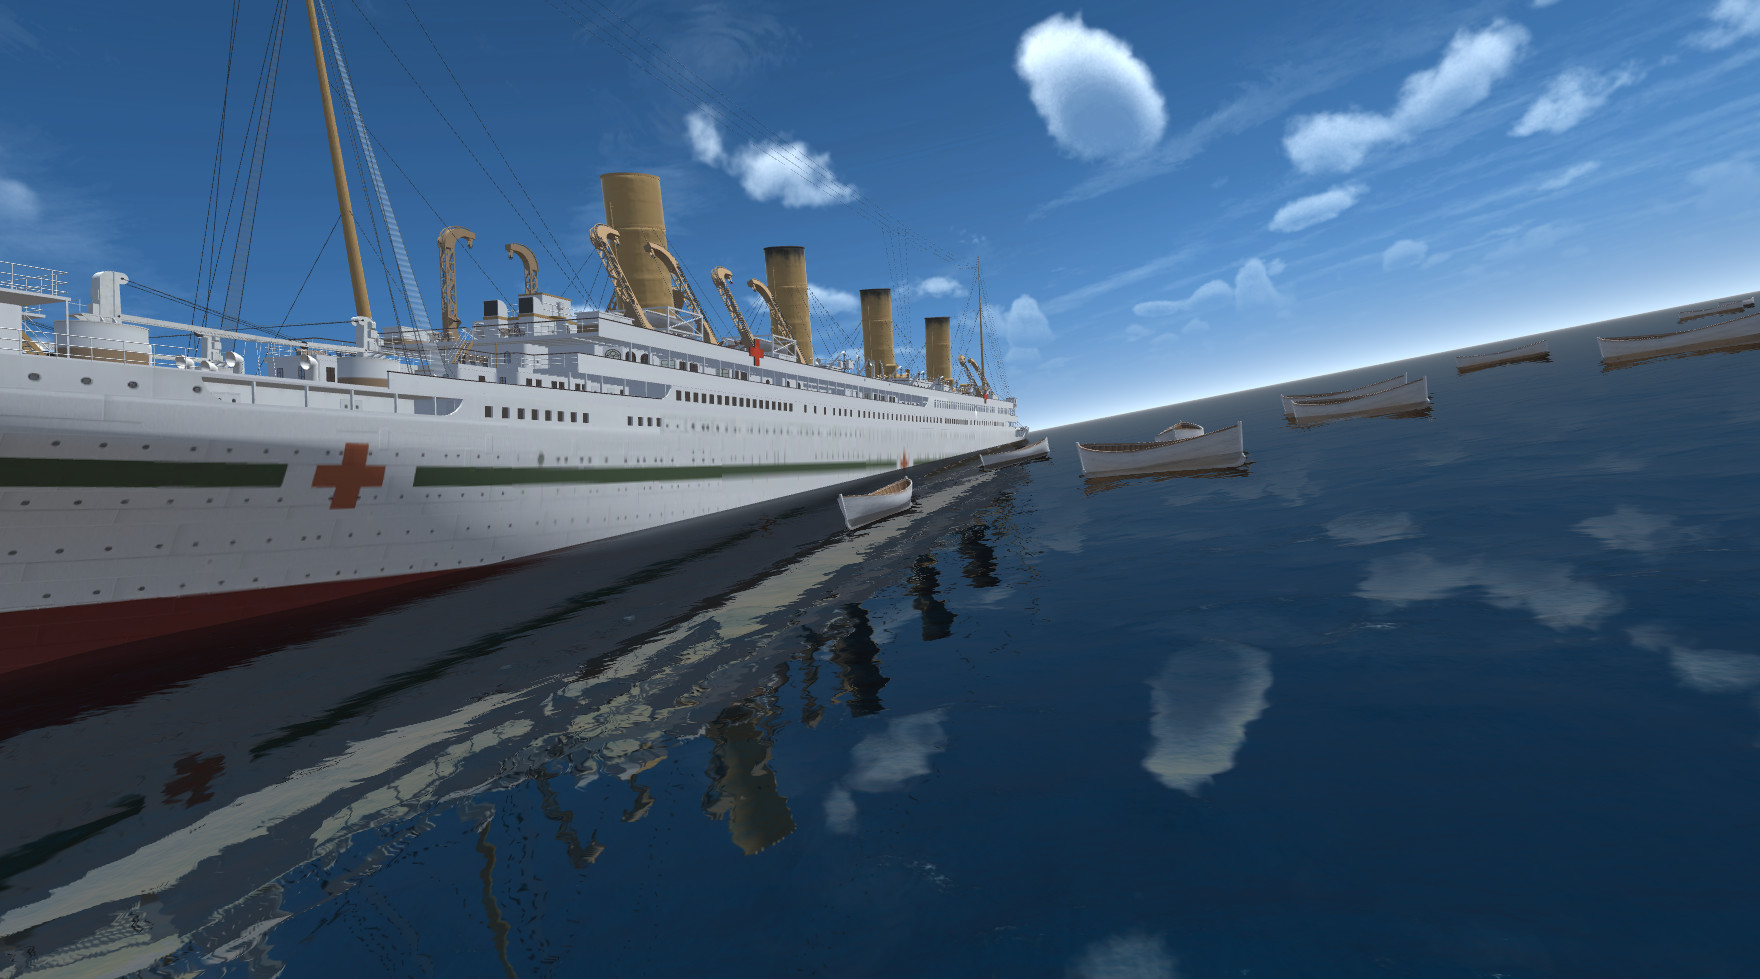 Britannic On Steam - roblox britannic sinking games online